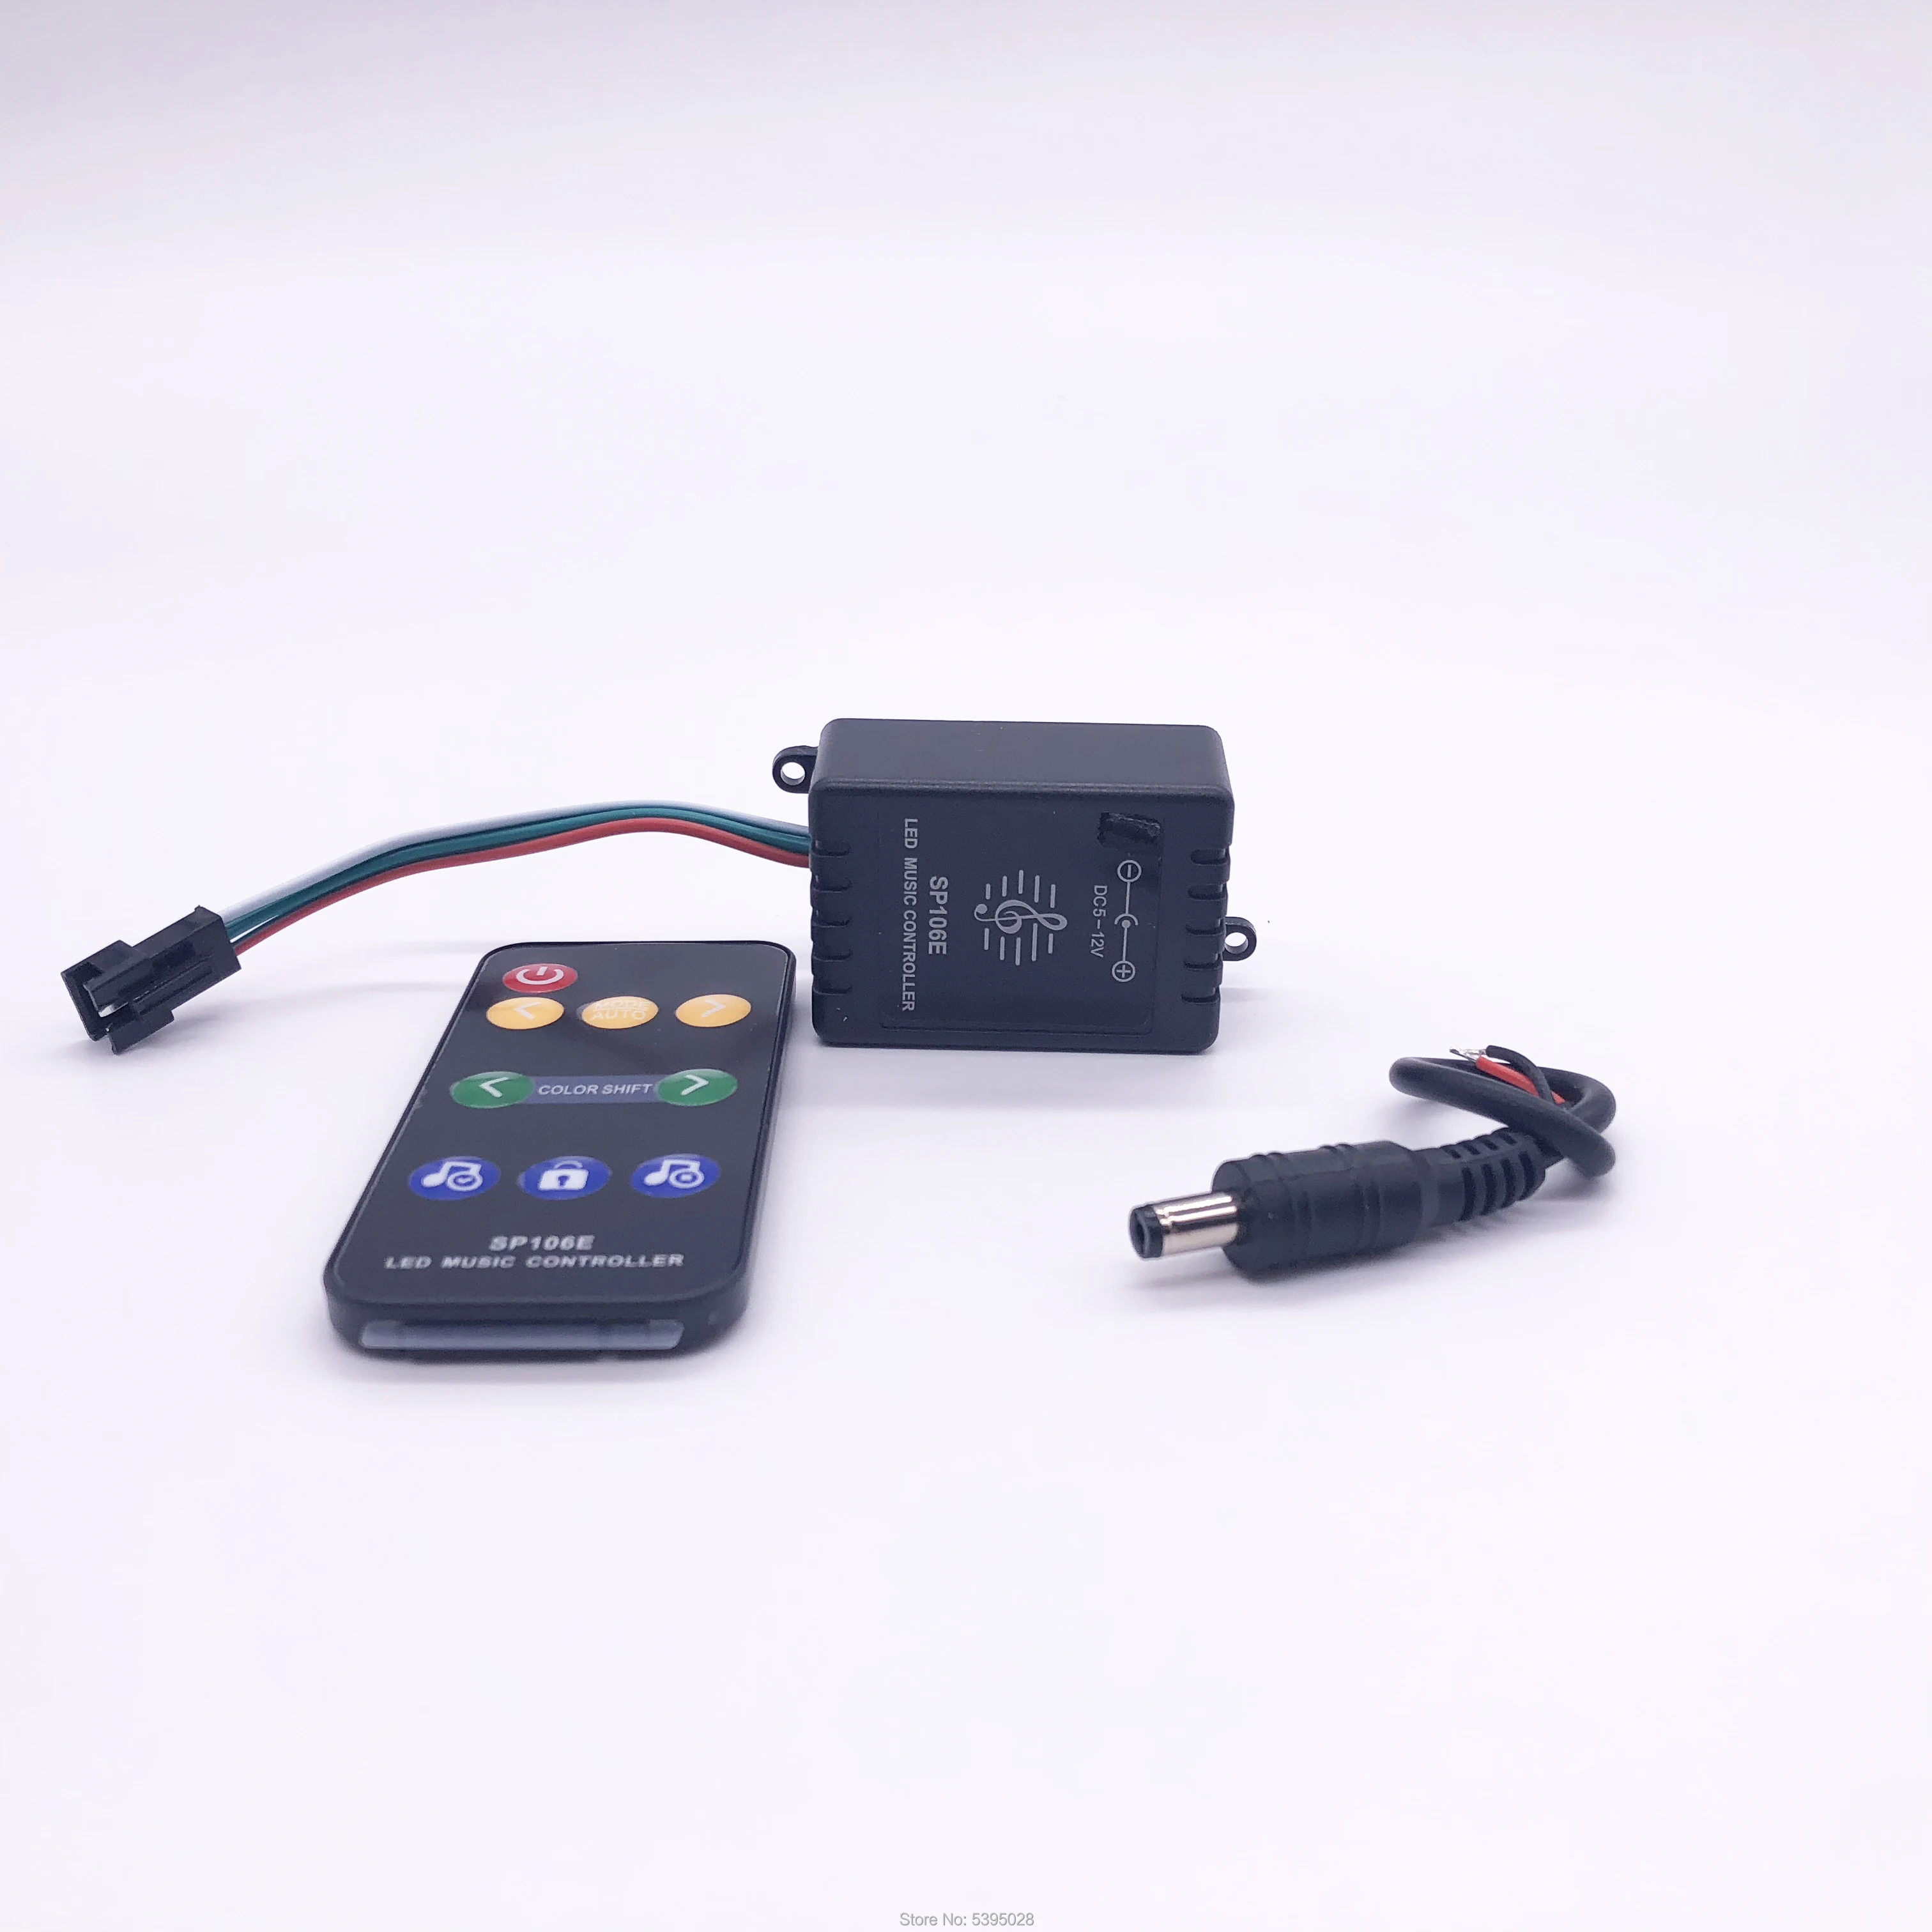 РЧ мини беспроводной музыкальный контроллер sp106e обычно используется в Светодиодная лента Пиксельная лампа RGB DC5V-24V